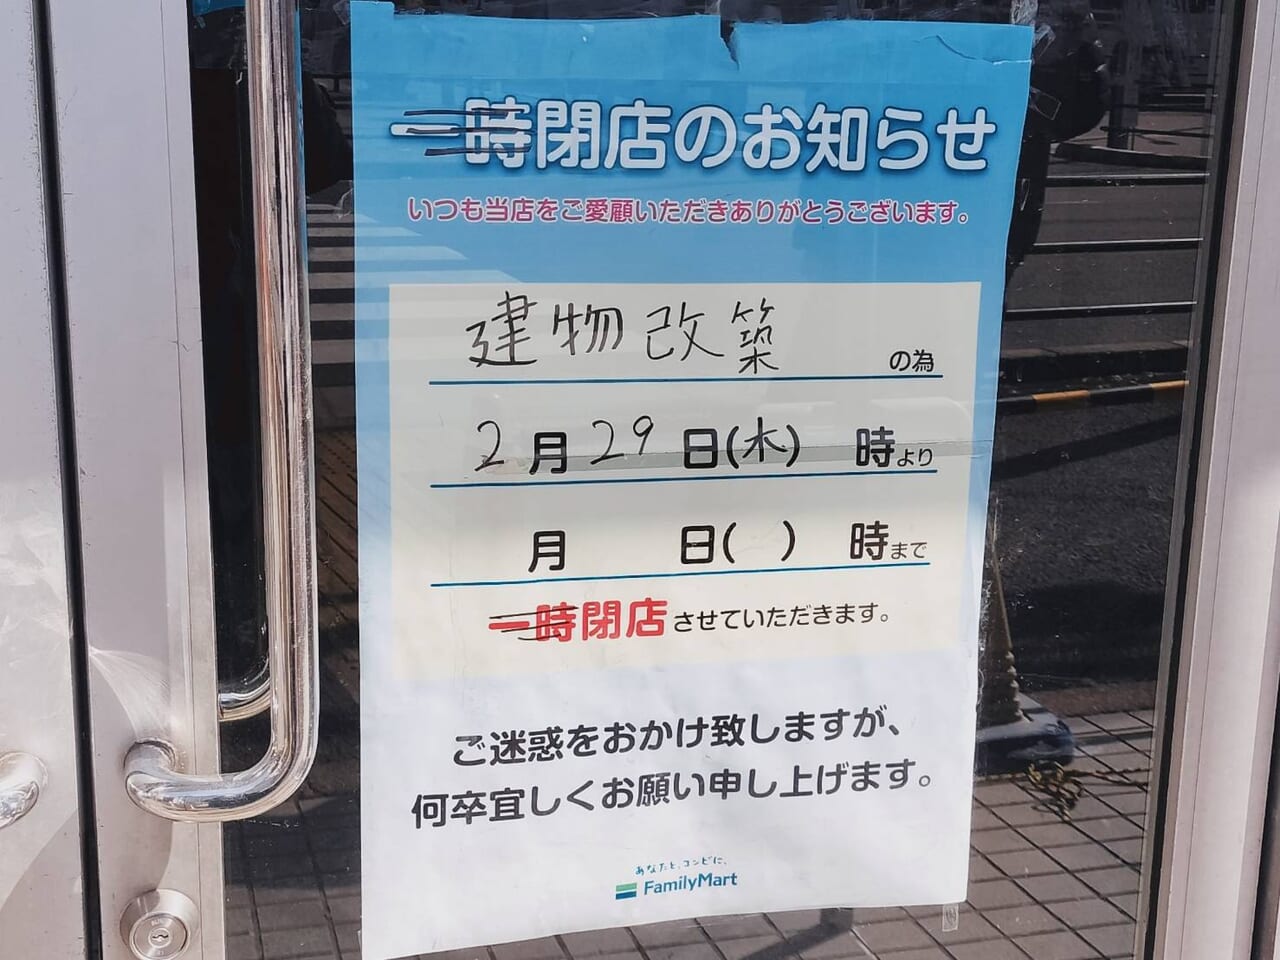 ファミリーマート武蔵小金井駅前店が閉店